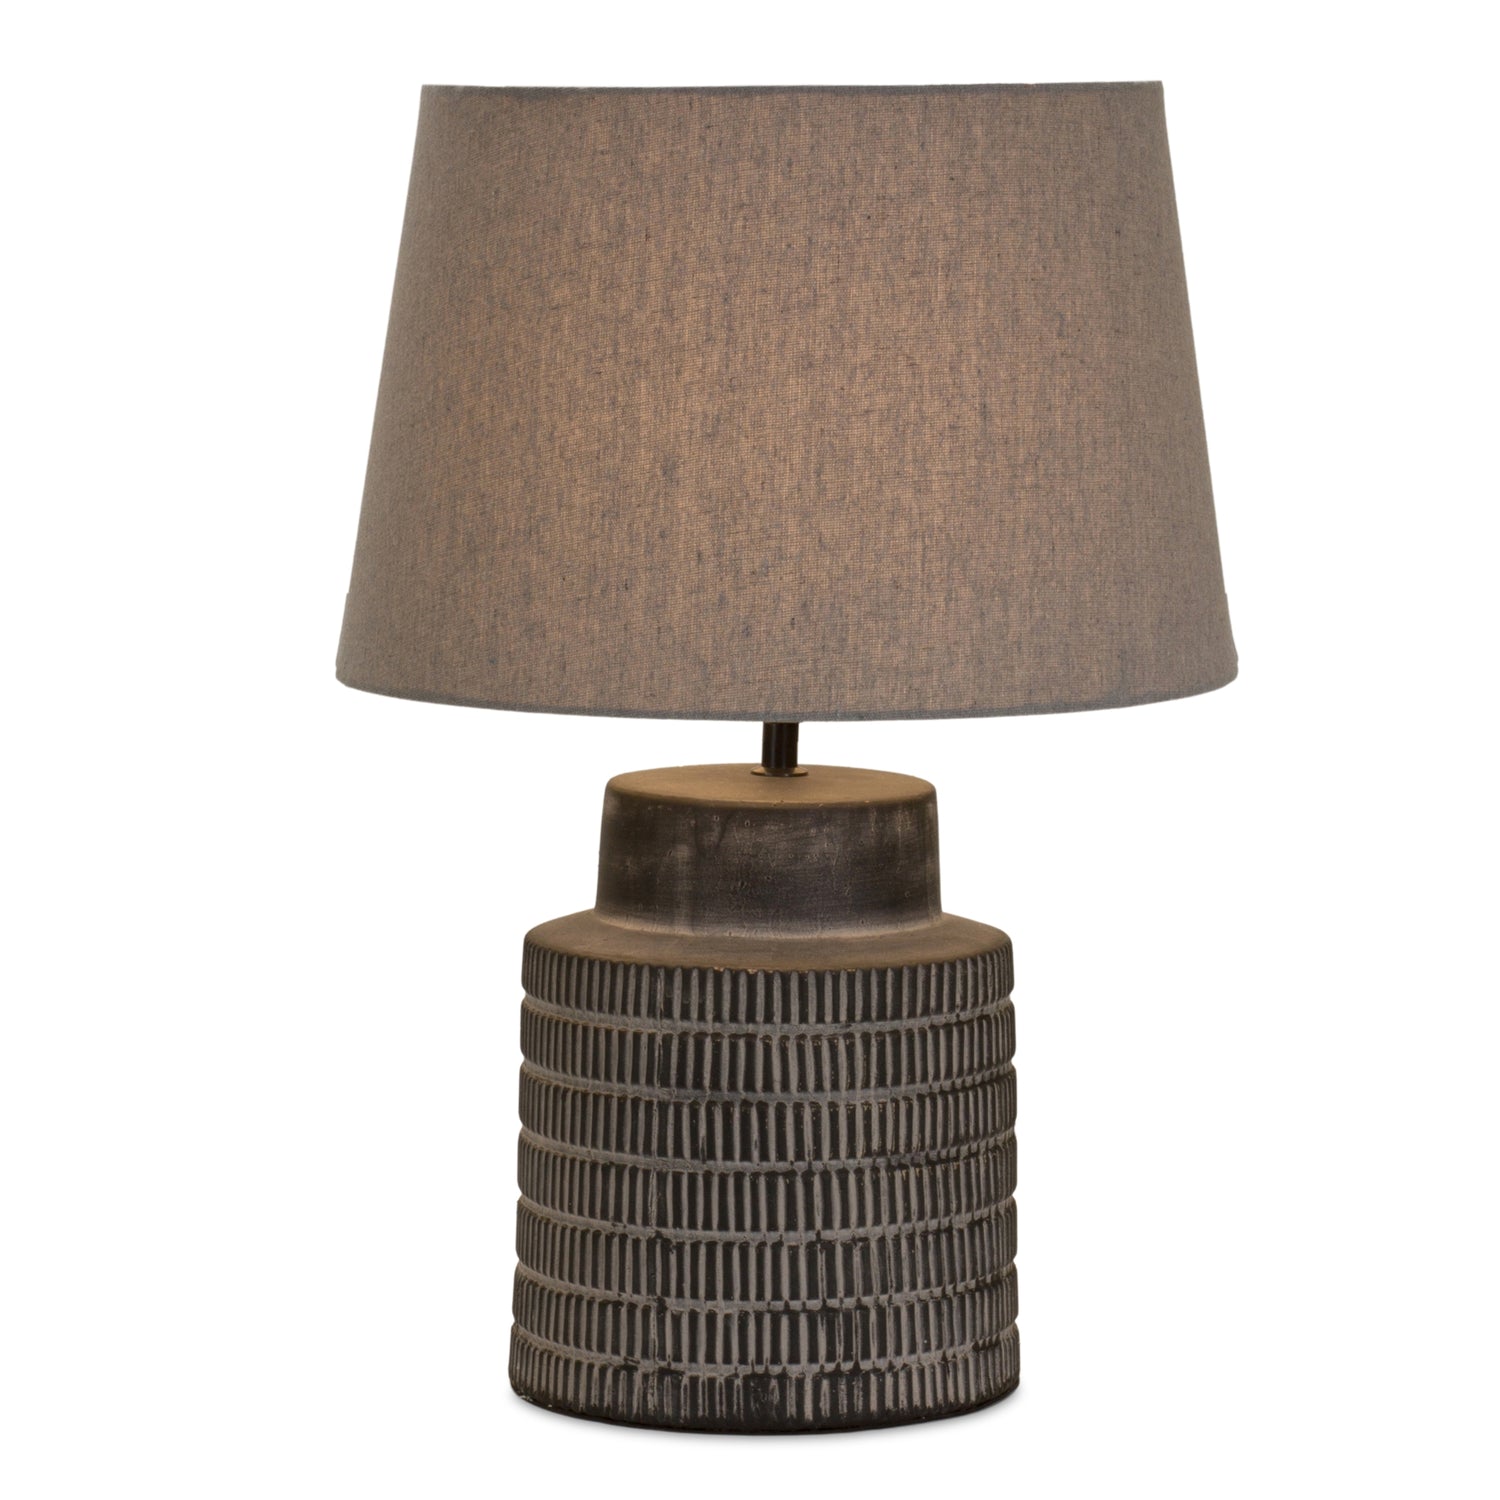 Table Lamp 21"H Terra Cotta/Linen